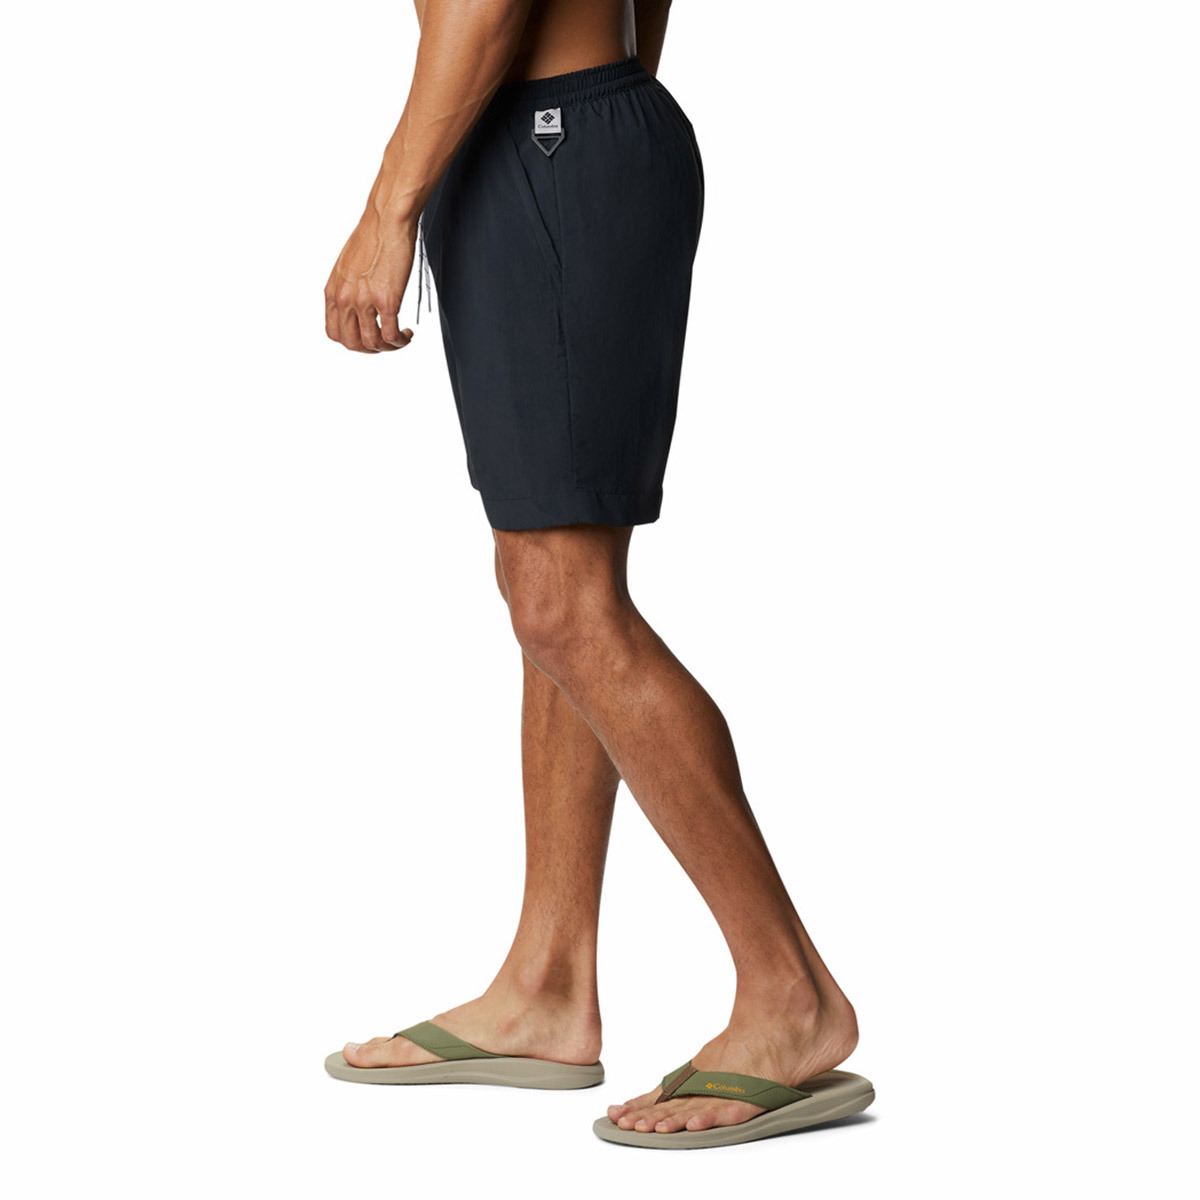 컬럼비아 남성 수영복 반바지 - 블랙, XL